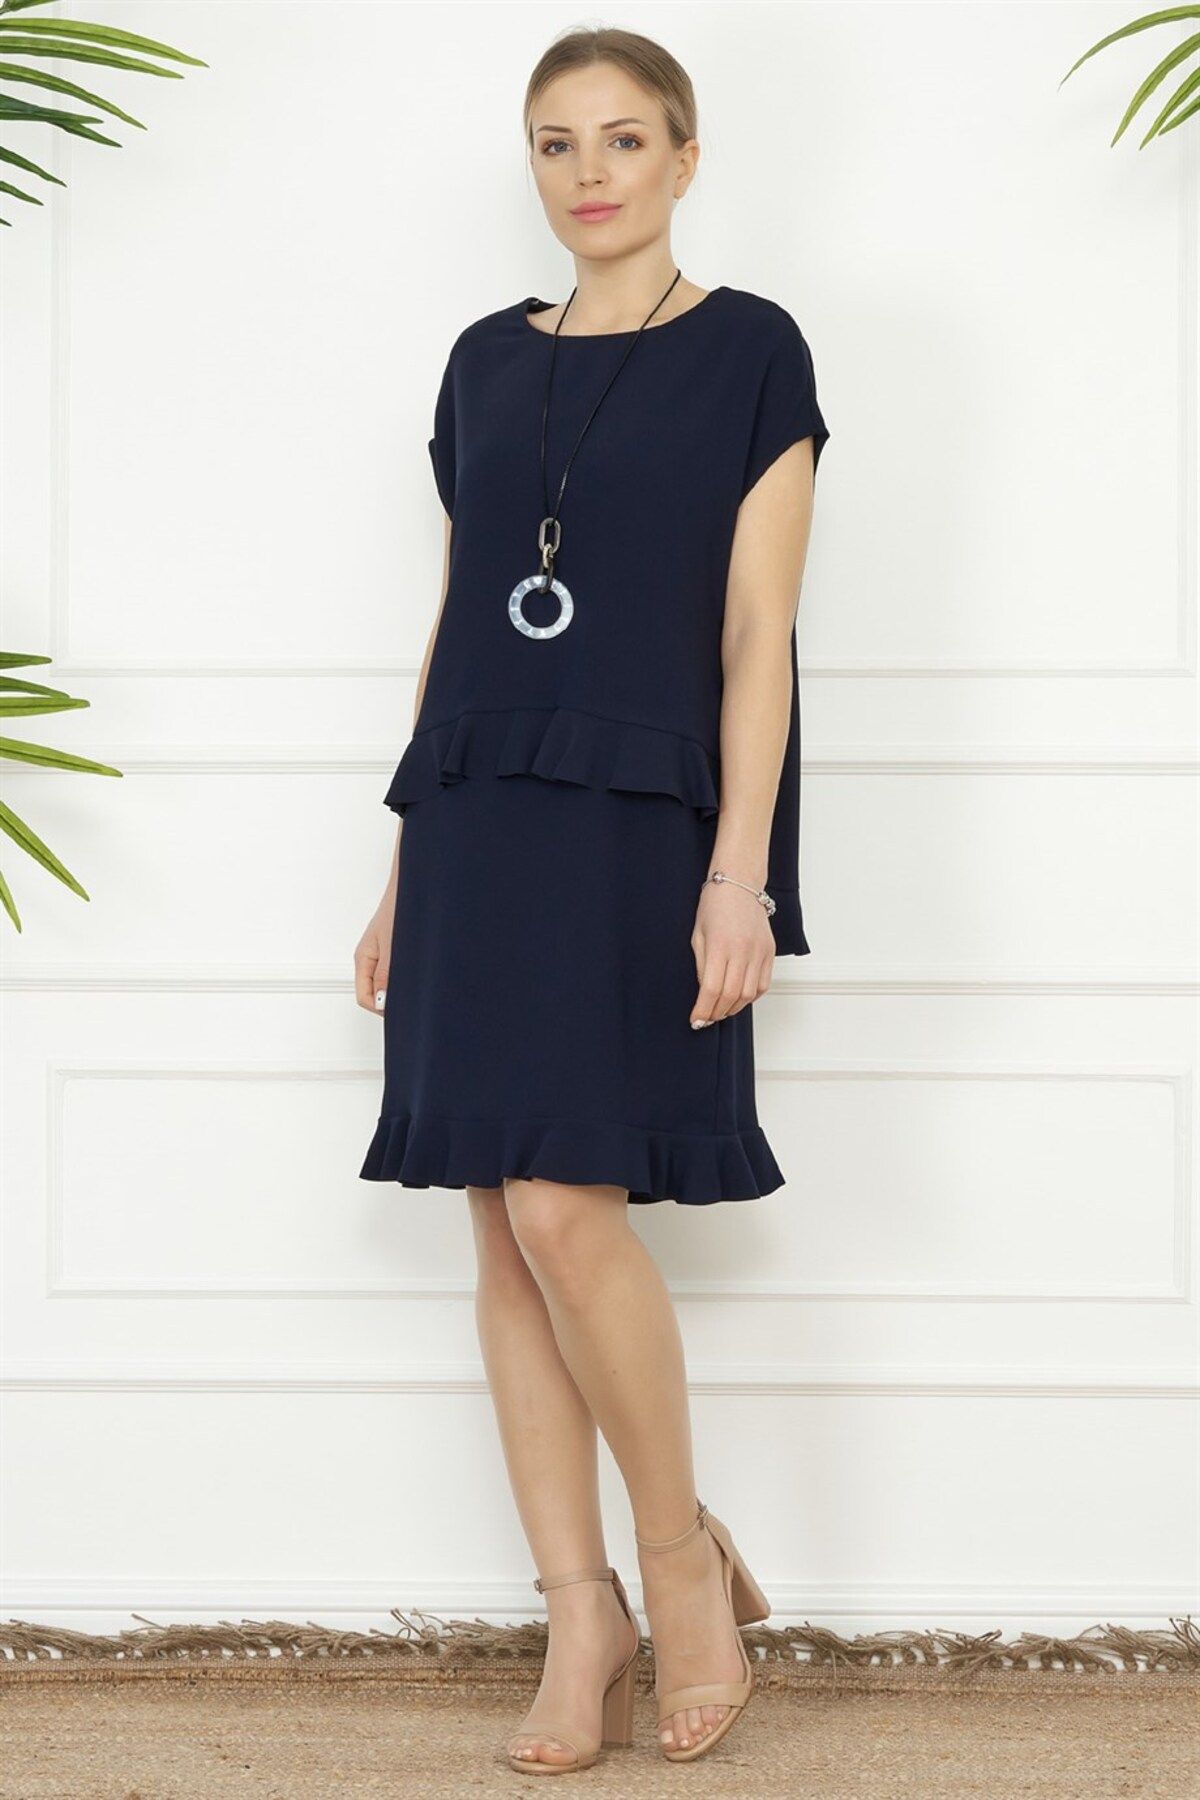 Miss Lilium Concept Lacivert Etek Ucu Büzgülü Elbise- Bluz Takım